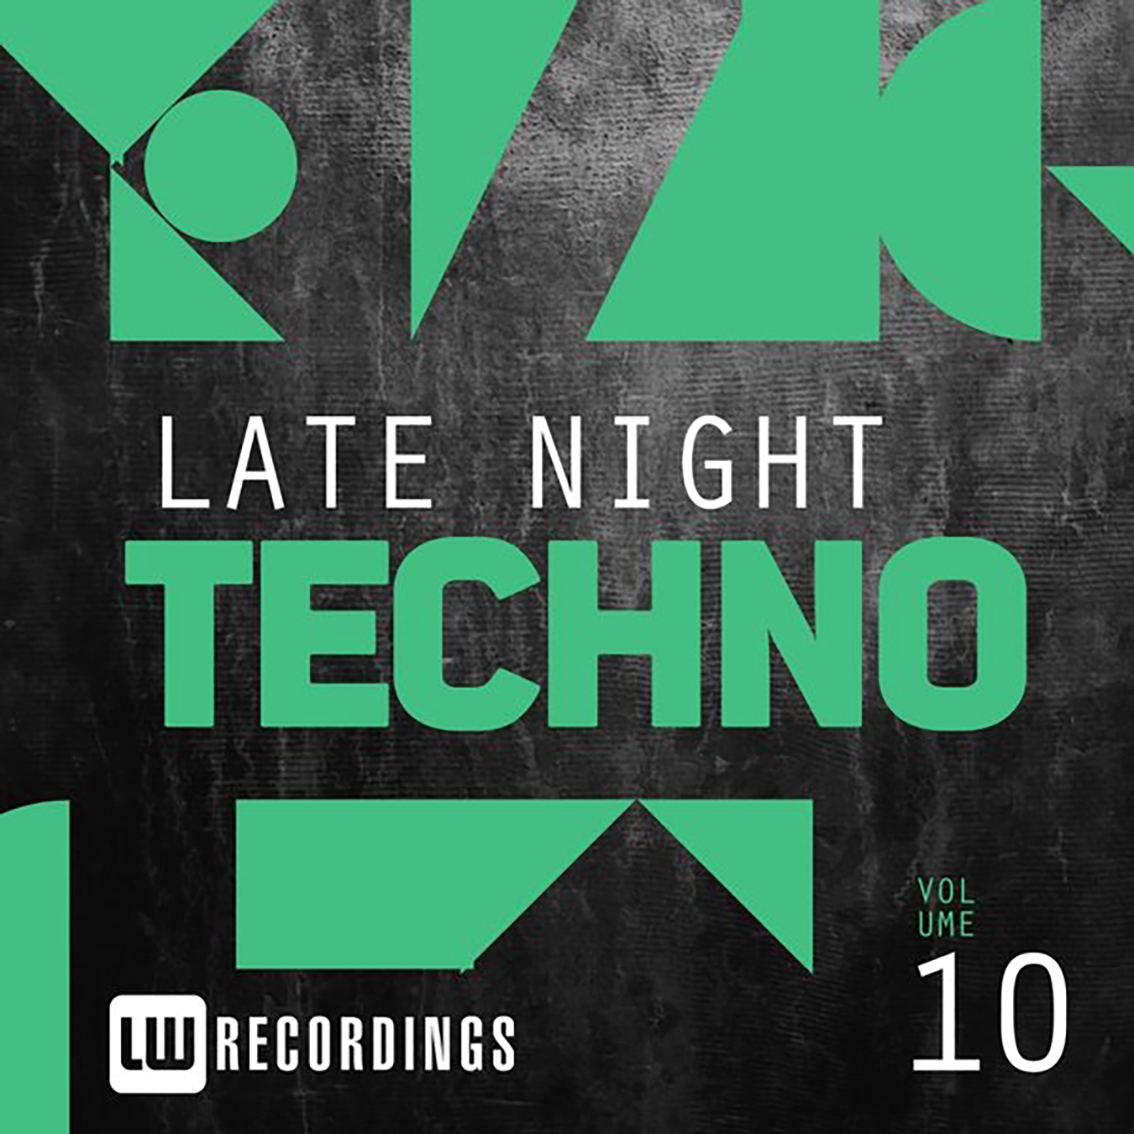 Late Night Techno Vol. 10